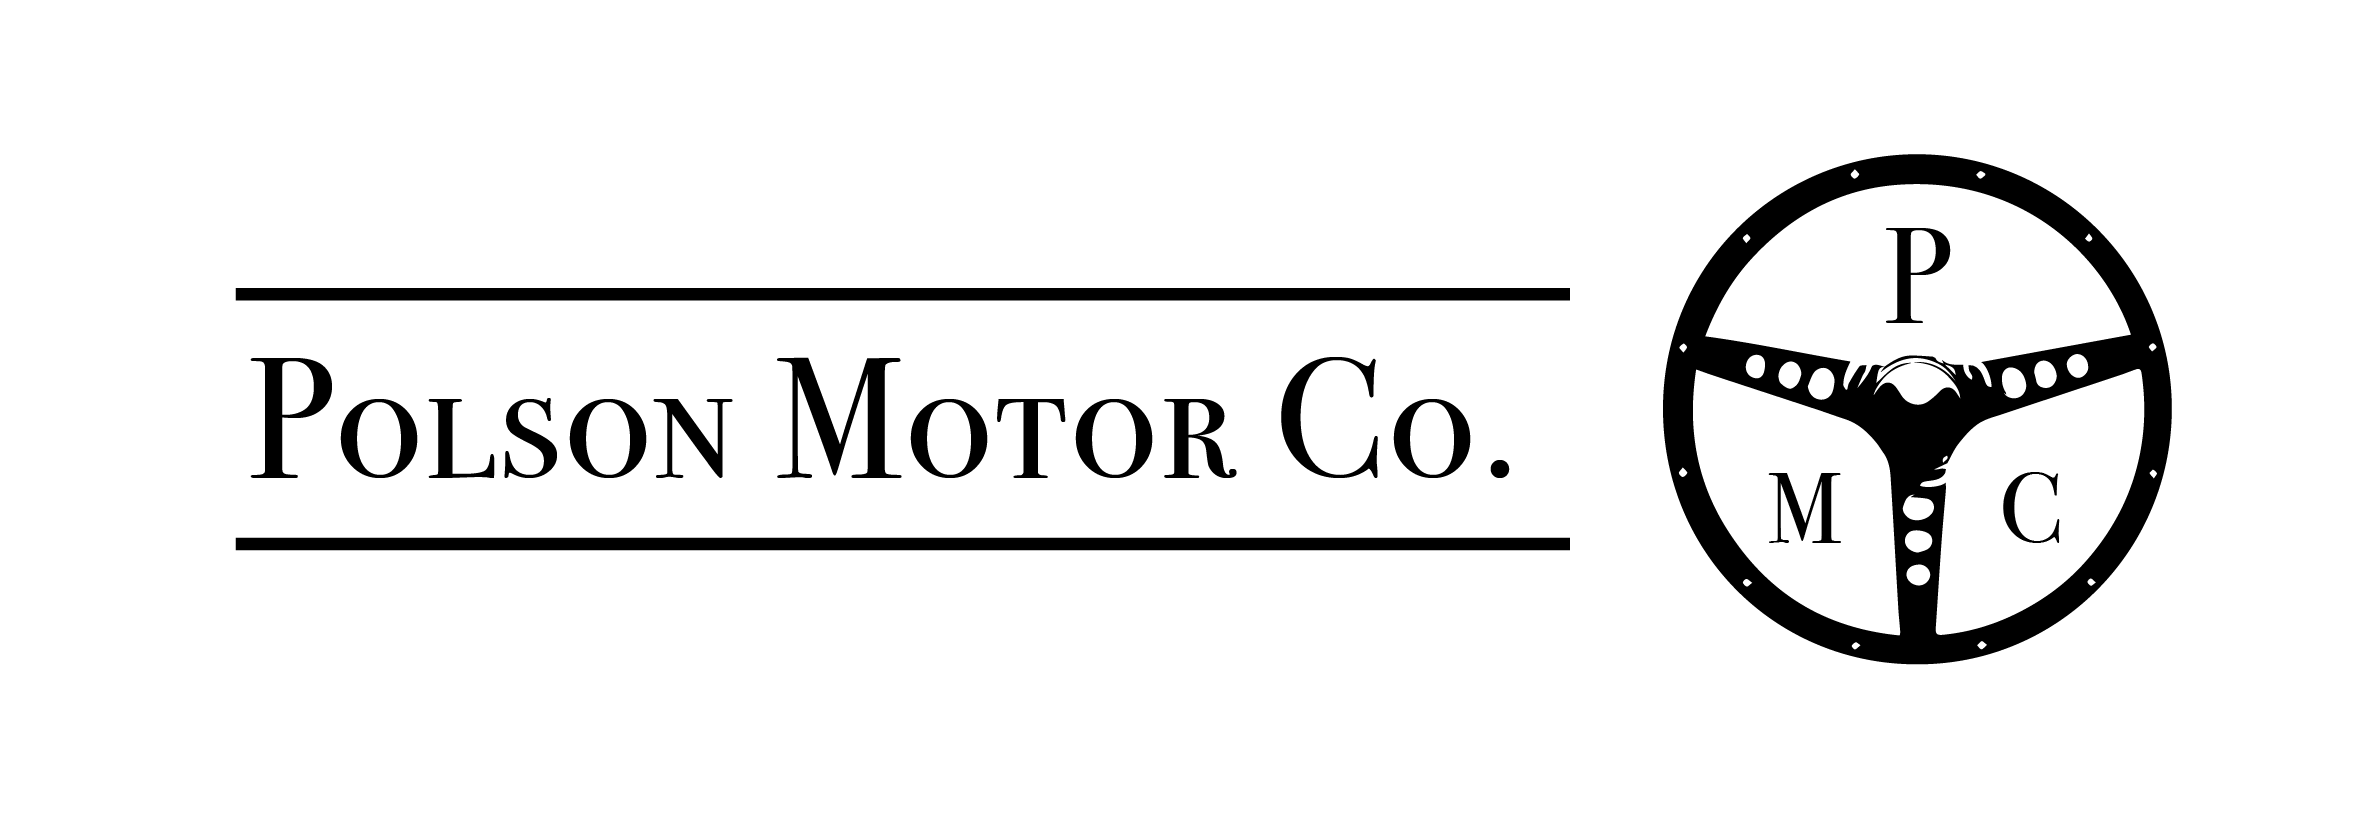 Polson Motor Company